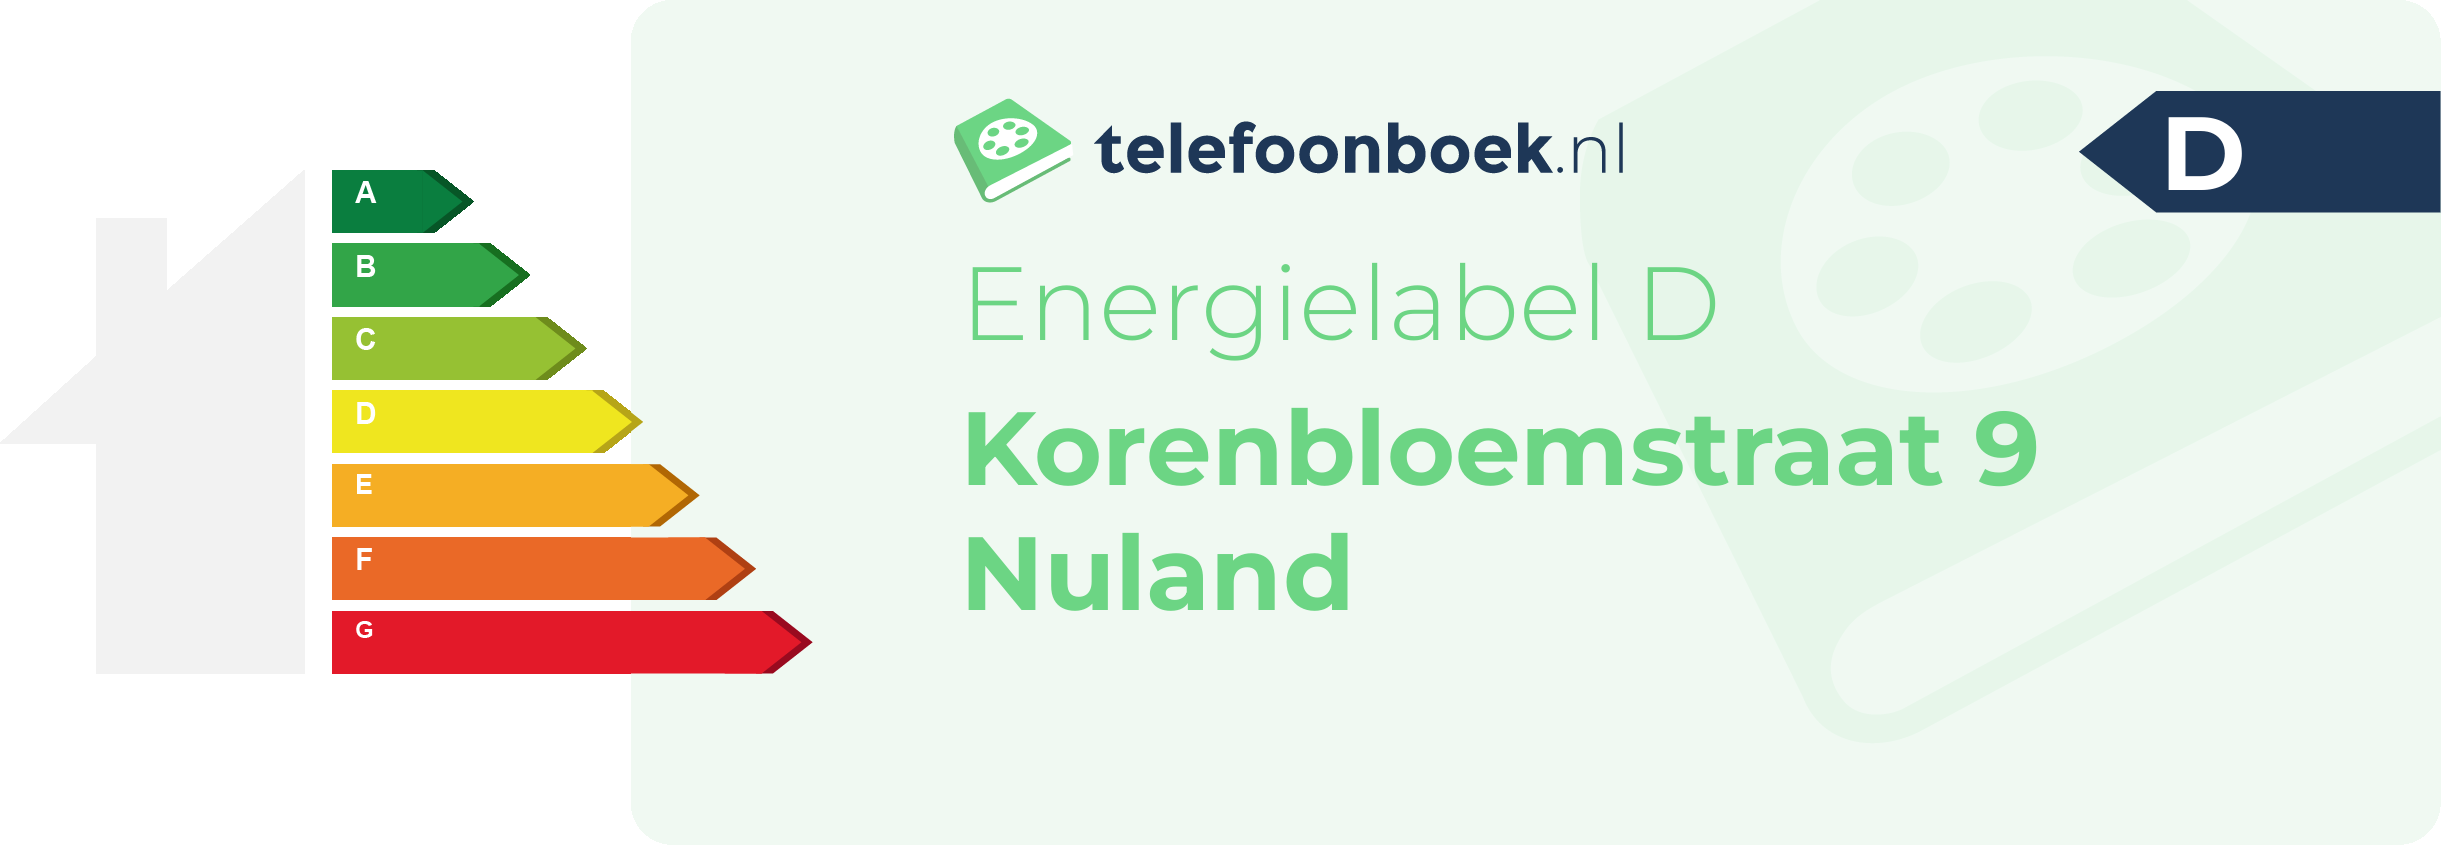 Energielabel Korenbloemstraat 9 Nuland